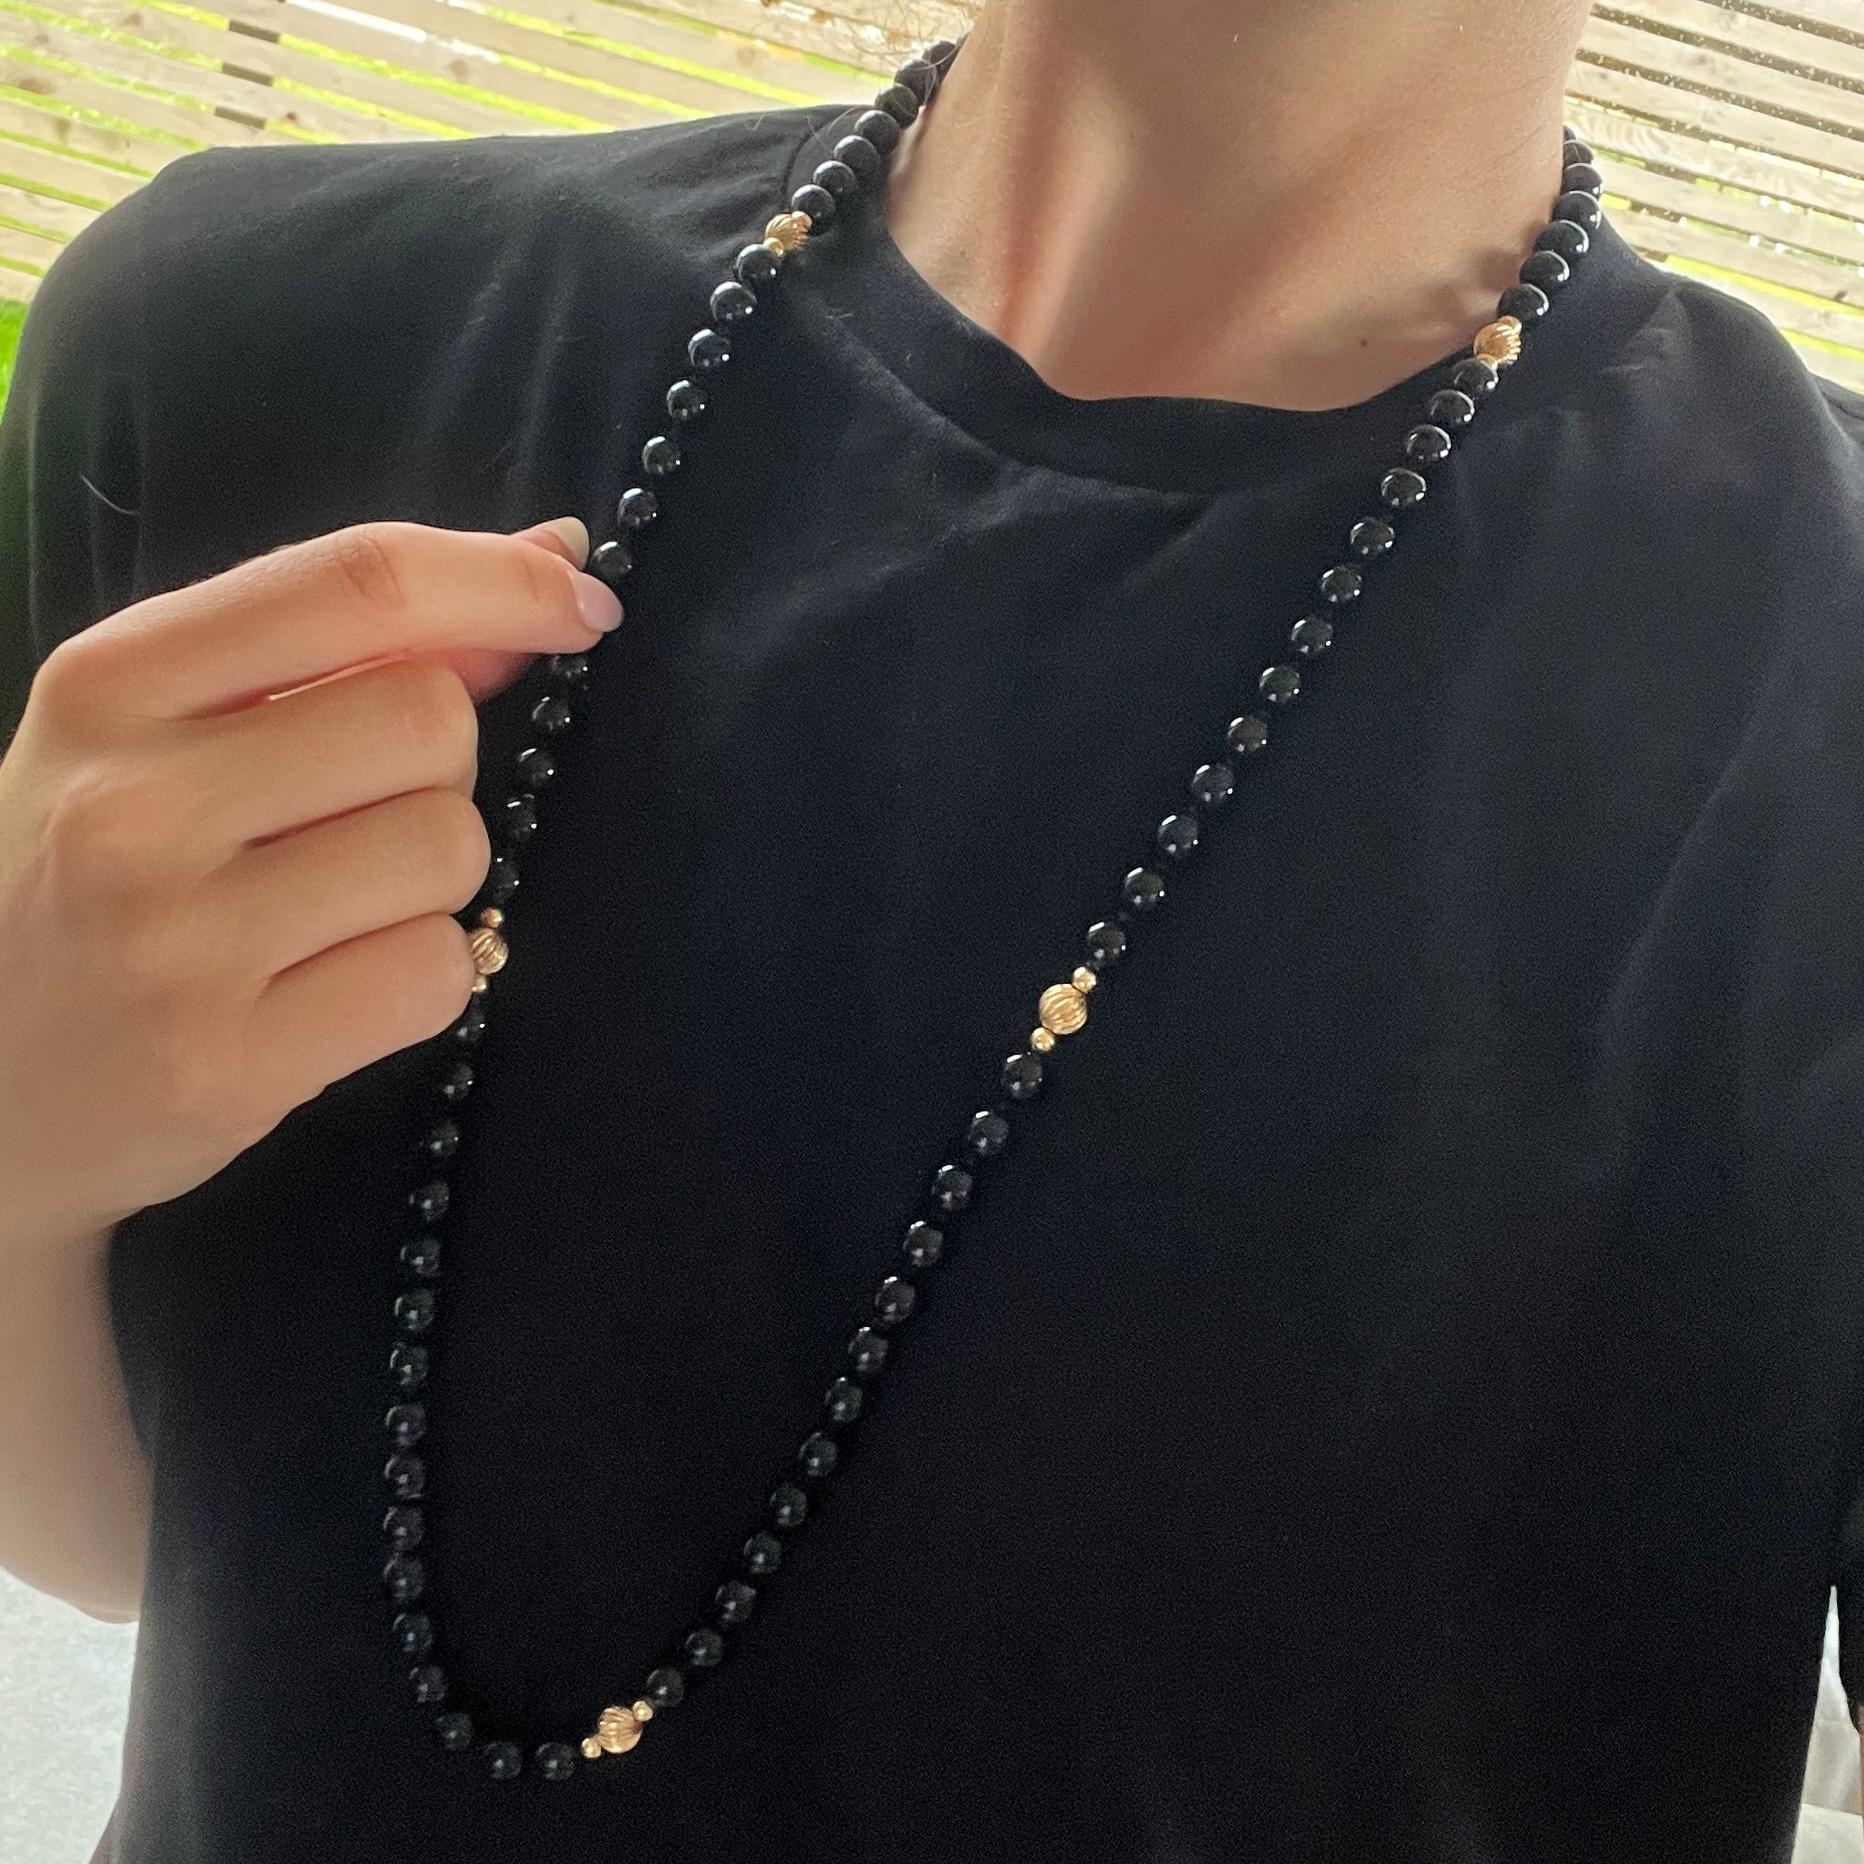 Die Onyxperlen sind wunderschön glänzend und die sechs 9-karätigen Goldperlen ergänzen die Perlen perfekt. 

Länge: 80cm 
Perlen-Durchmesser: 7mm

Gewicht: 58,3 g